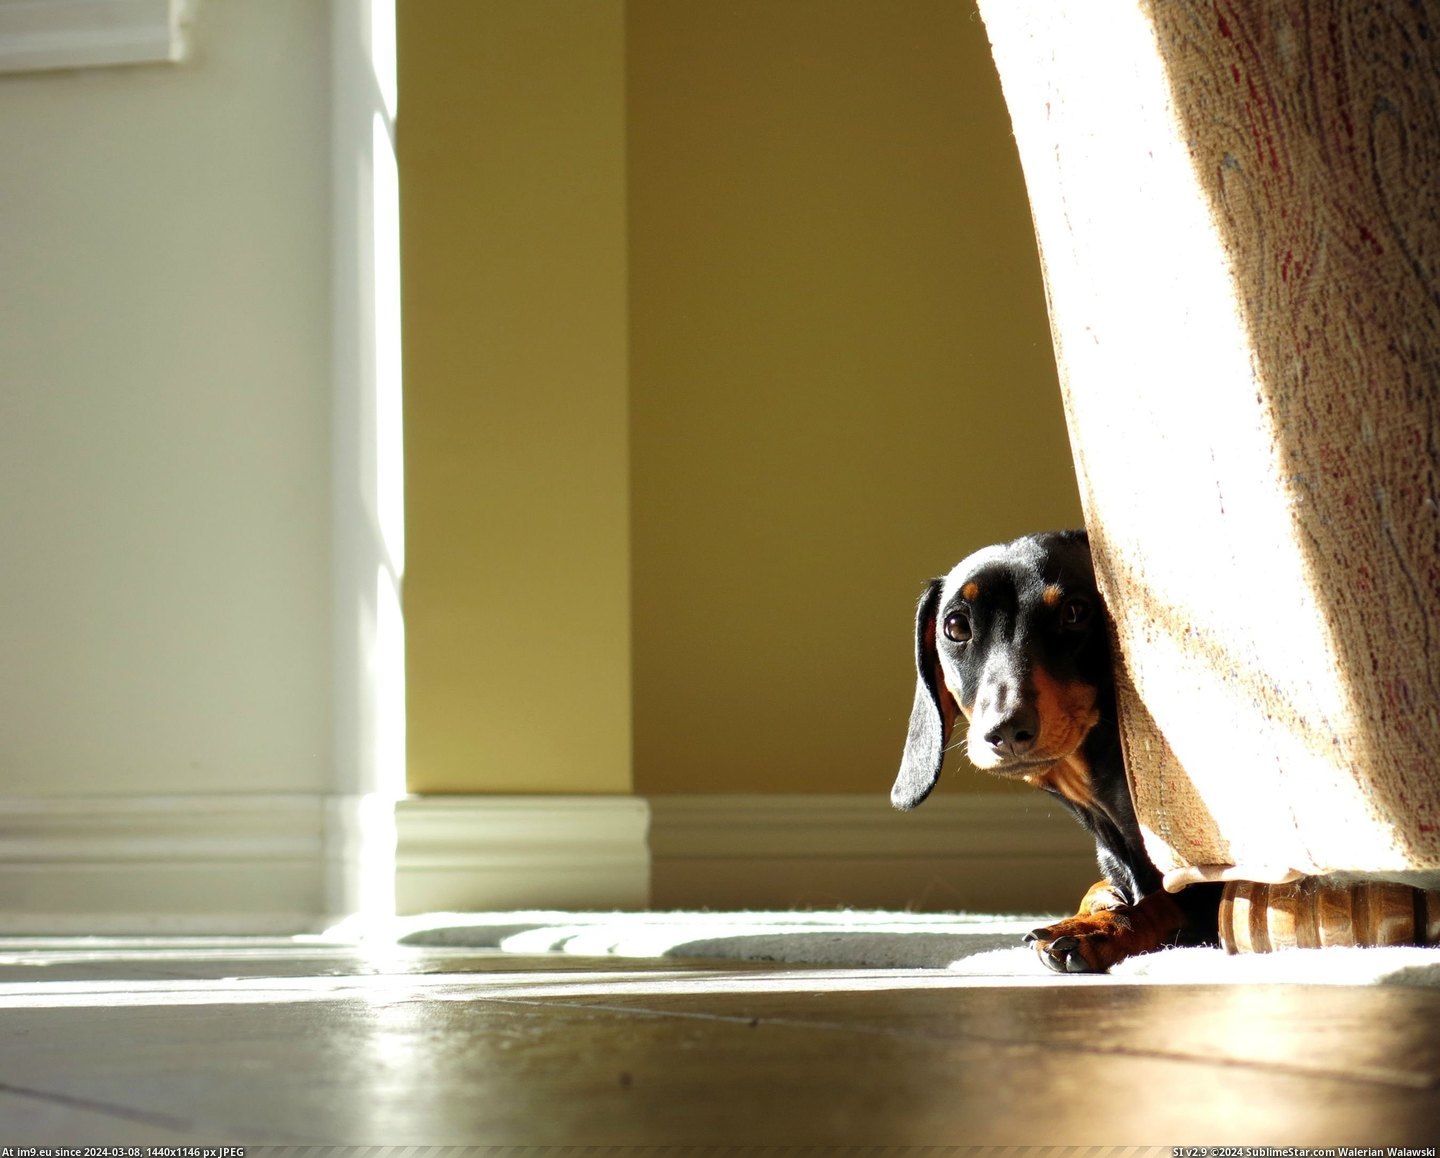 #Puppy #Dachshund #Shy [Aww] My Dachshund puppy is really shy. Pic. (Bild von album My r/AWW favs))